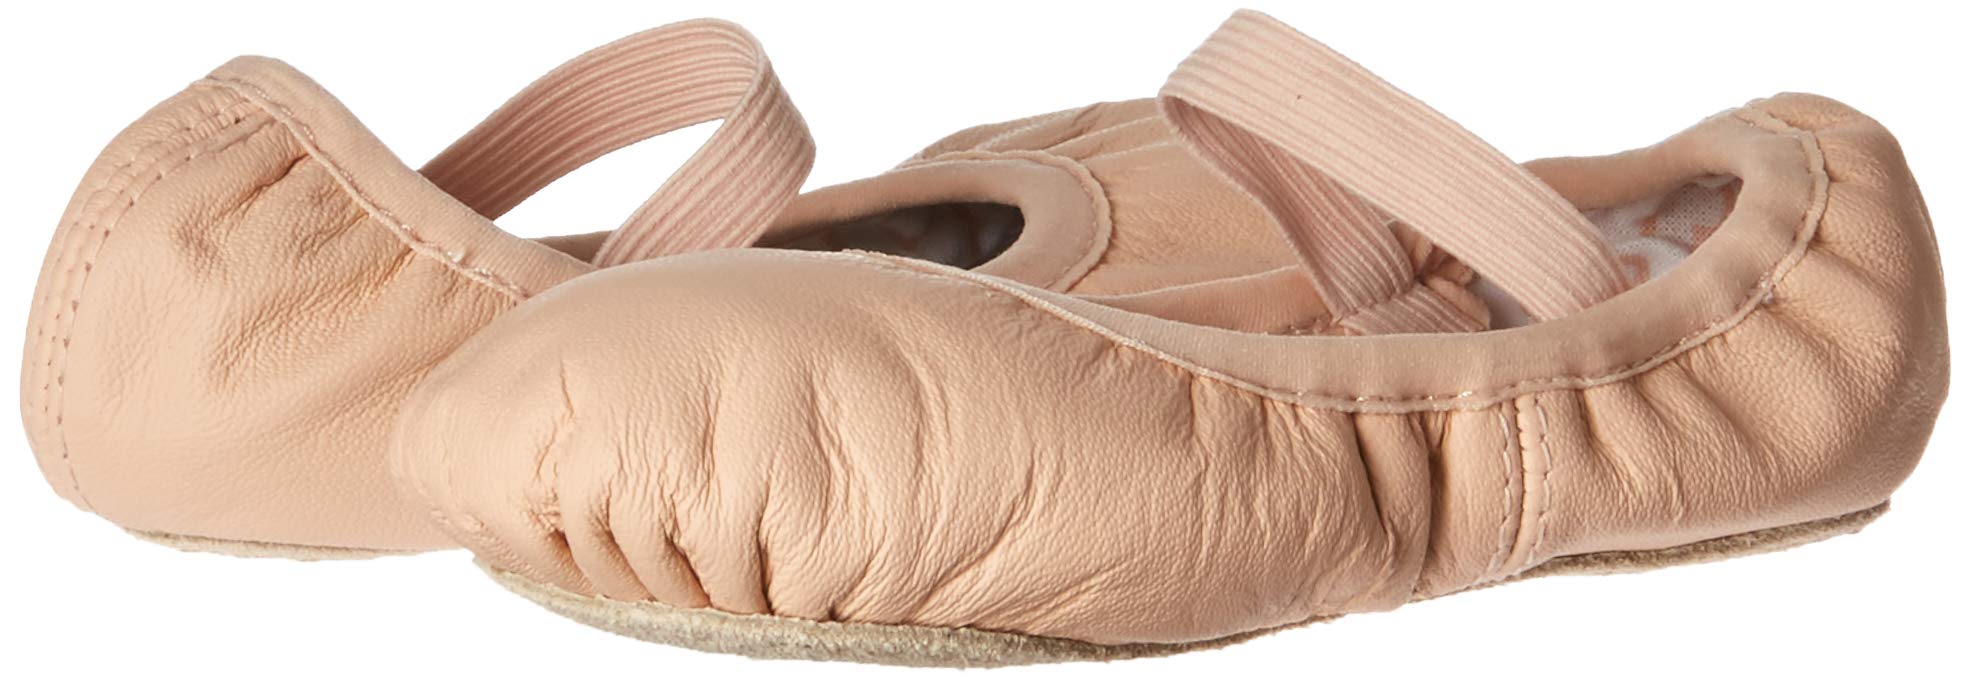 Bloch Dance Kids Belle Full Sole Leather Ballet Slipper / Shoe